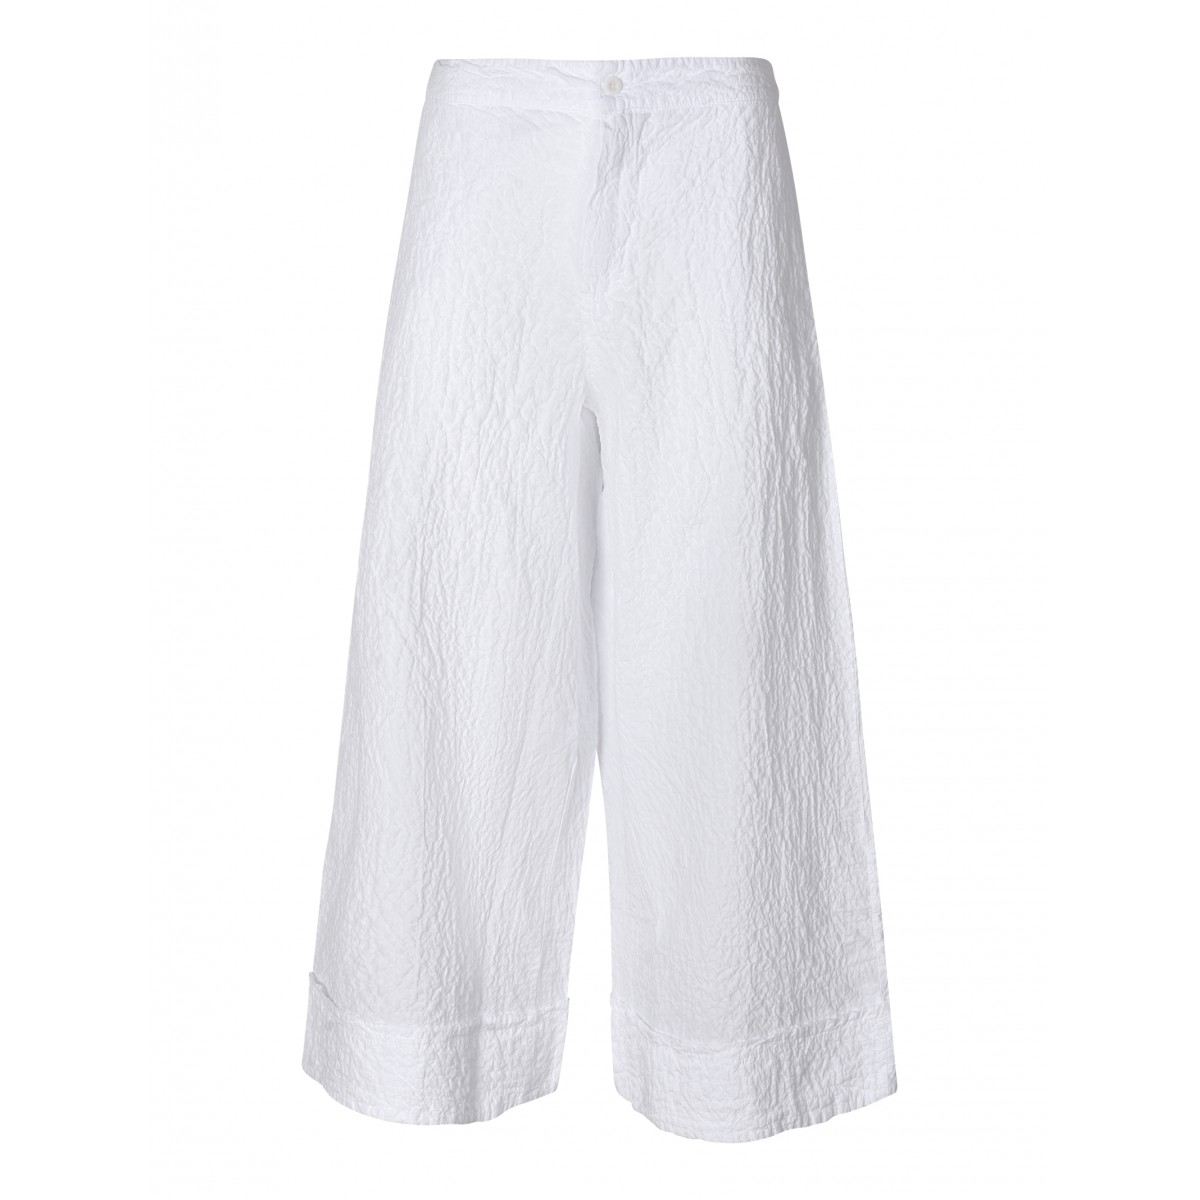 pantaloni white